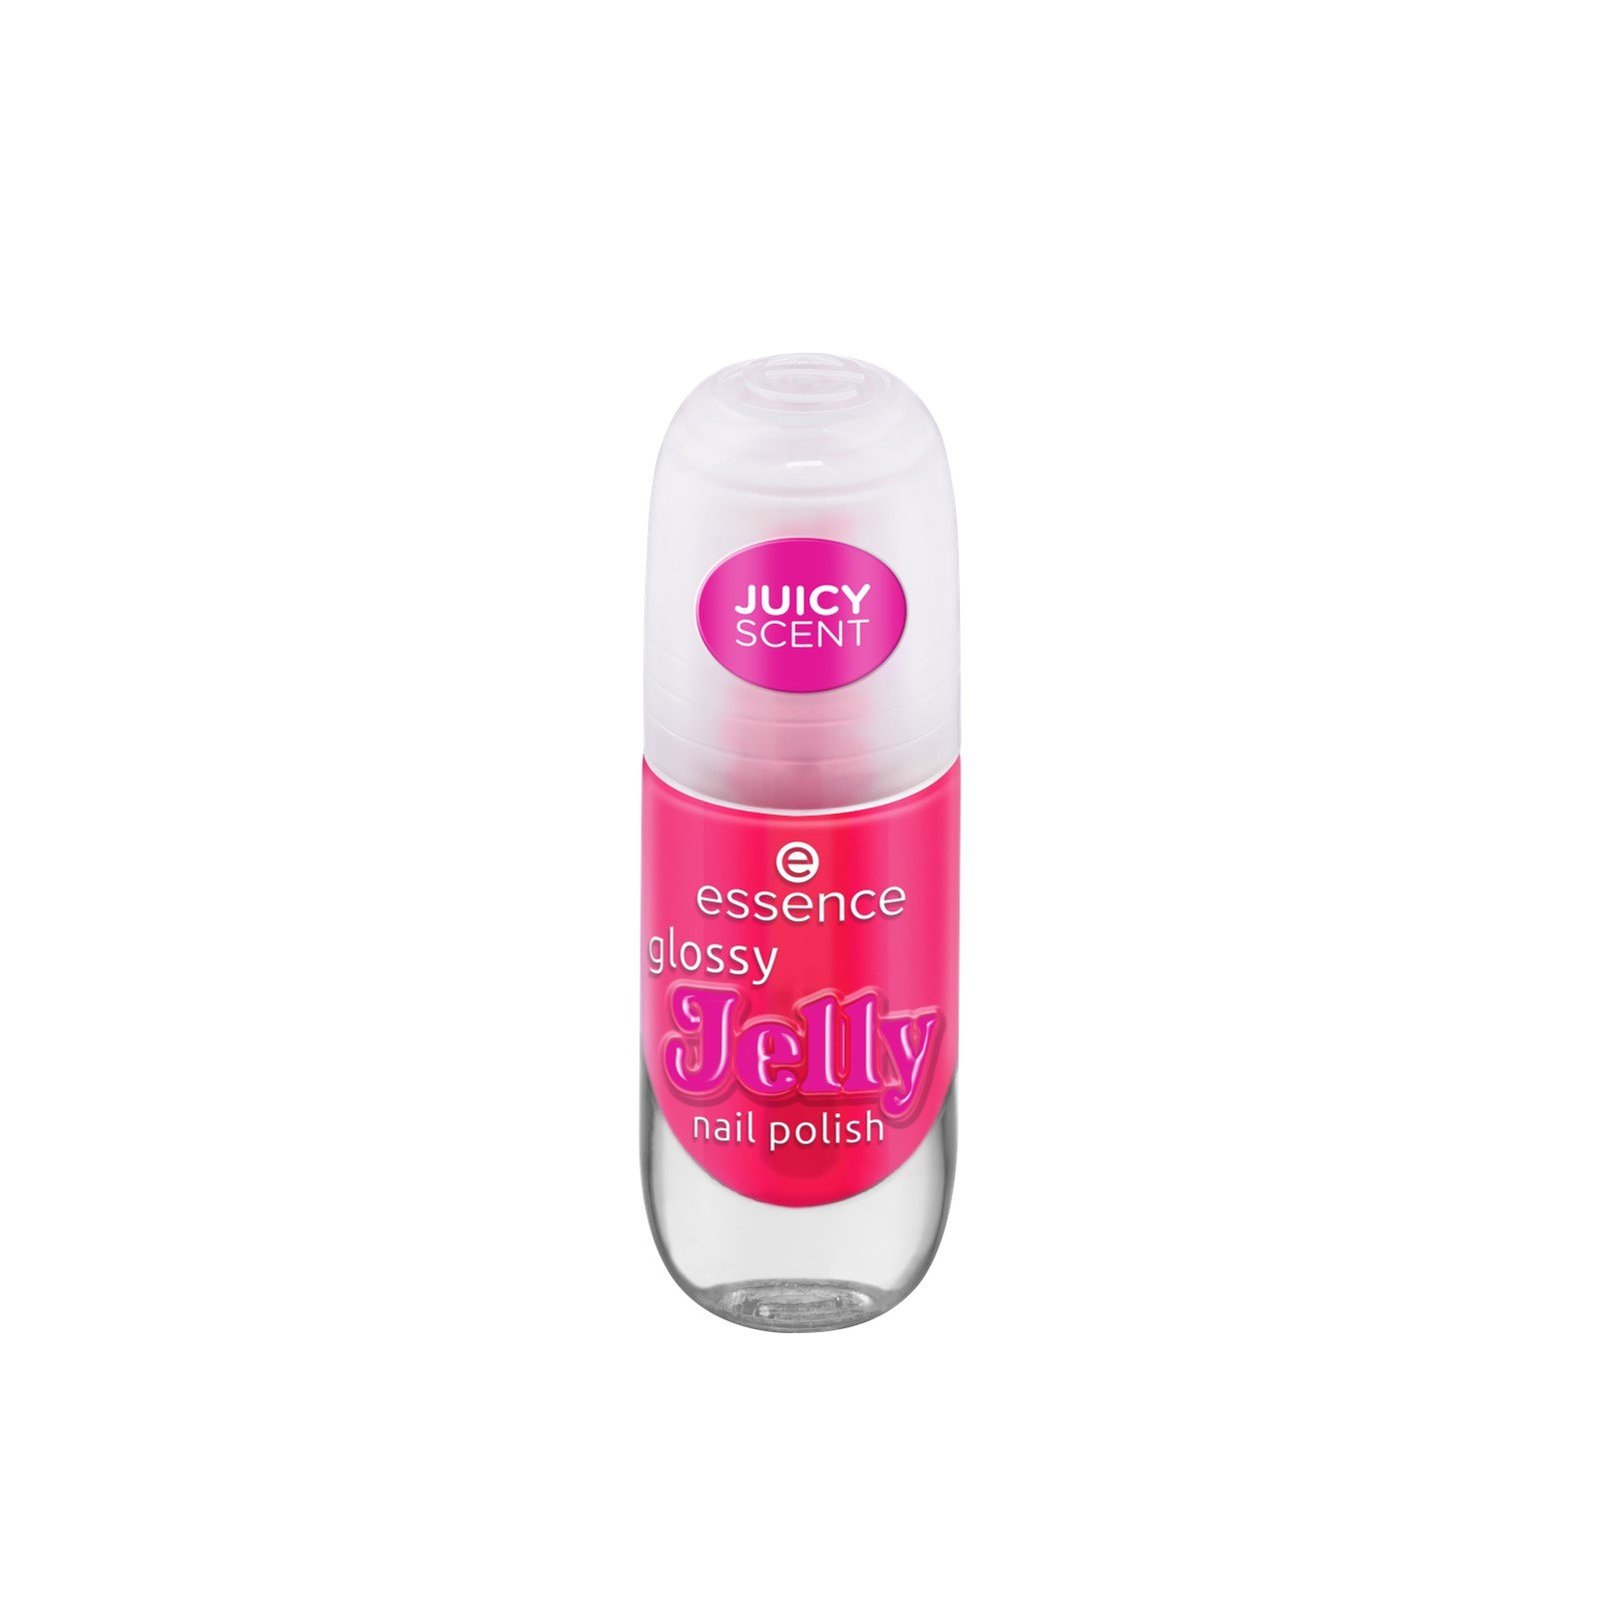 essence Glossy Jelly Nail Polish 02 Candy Gloss 8ml